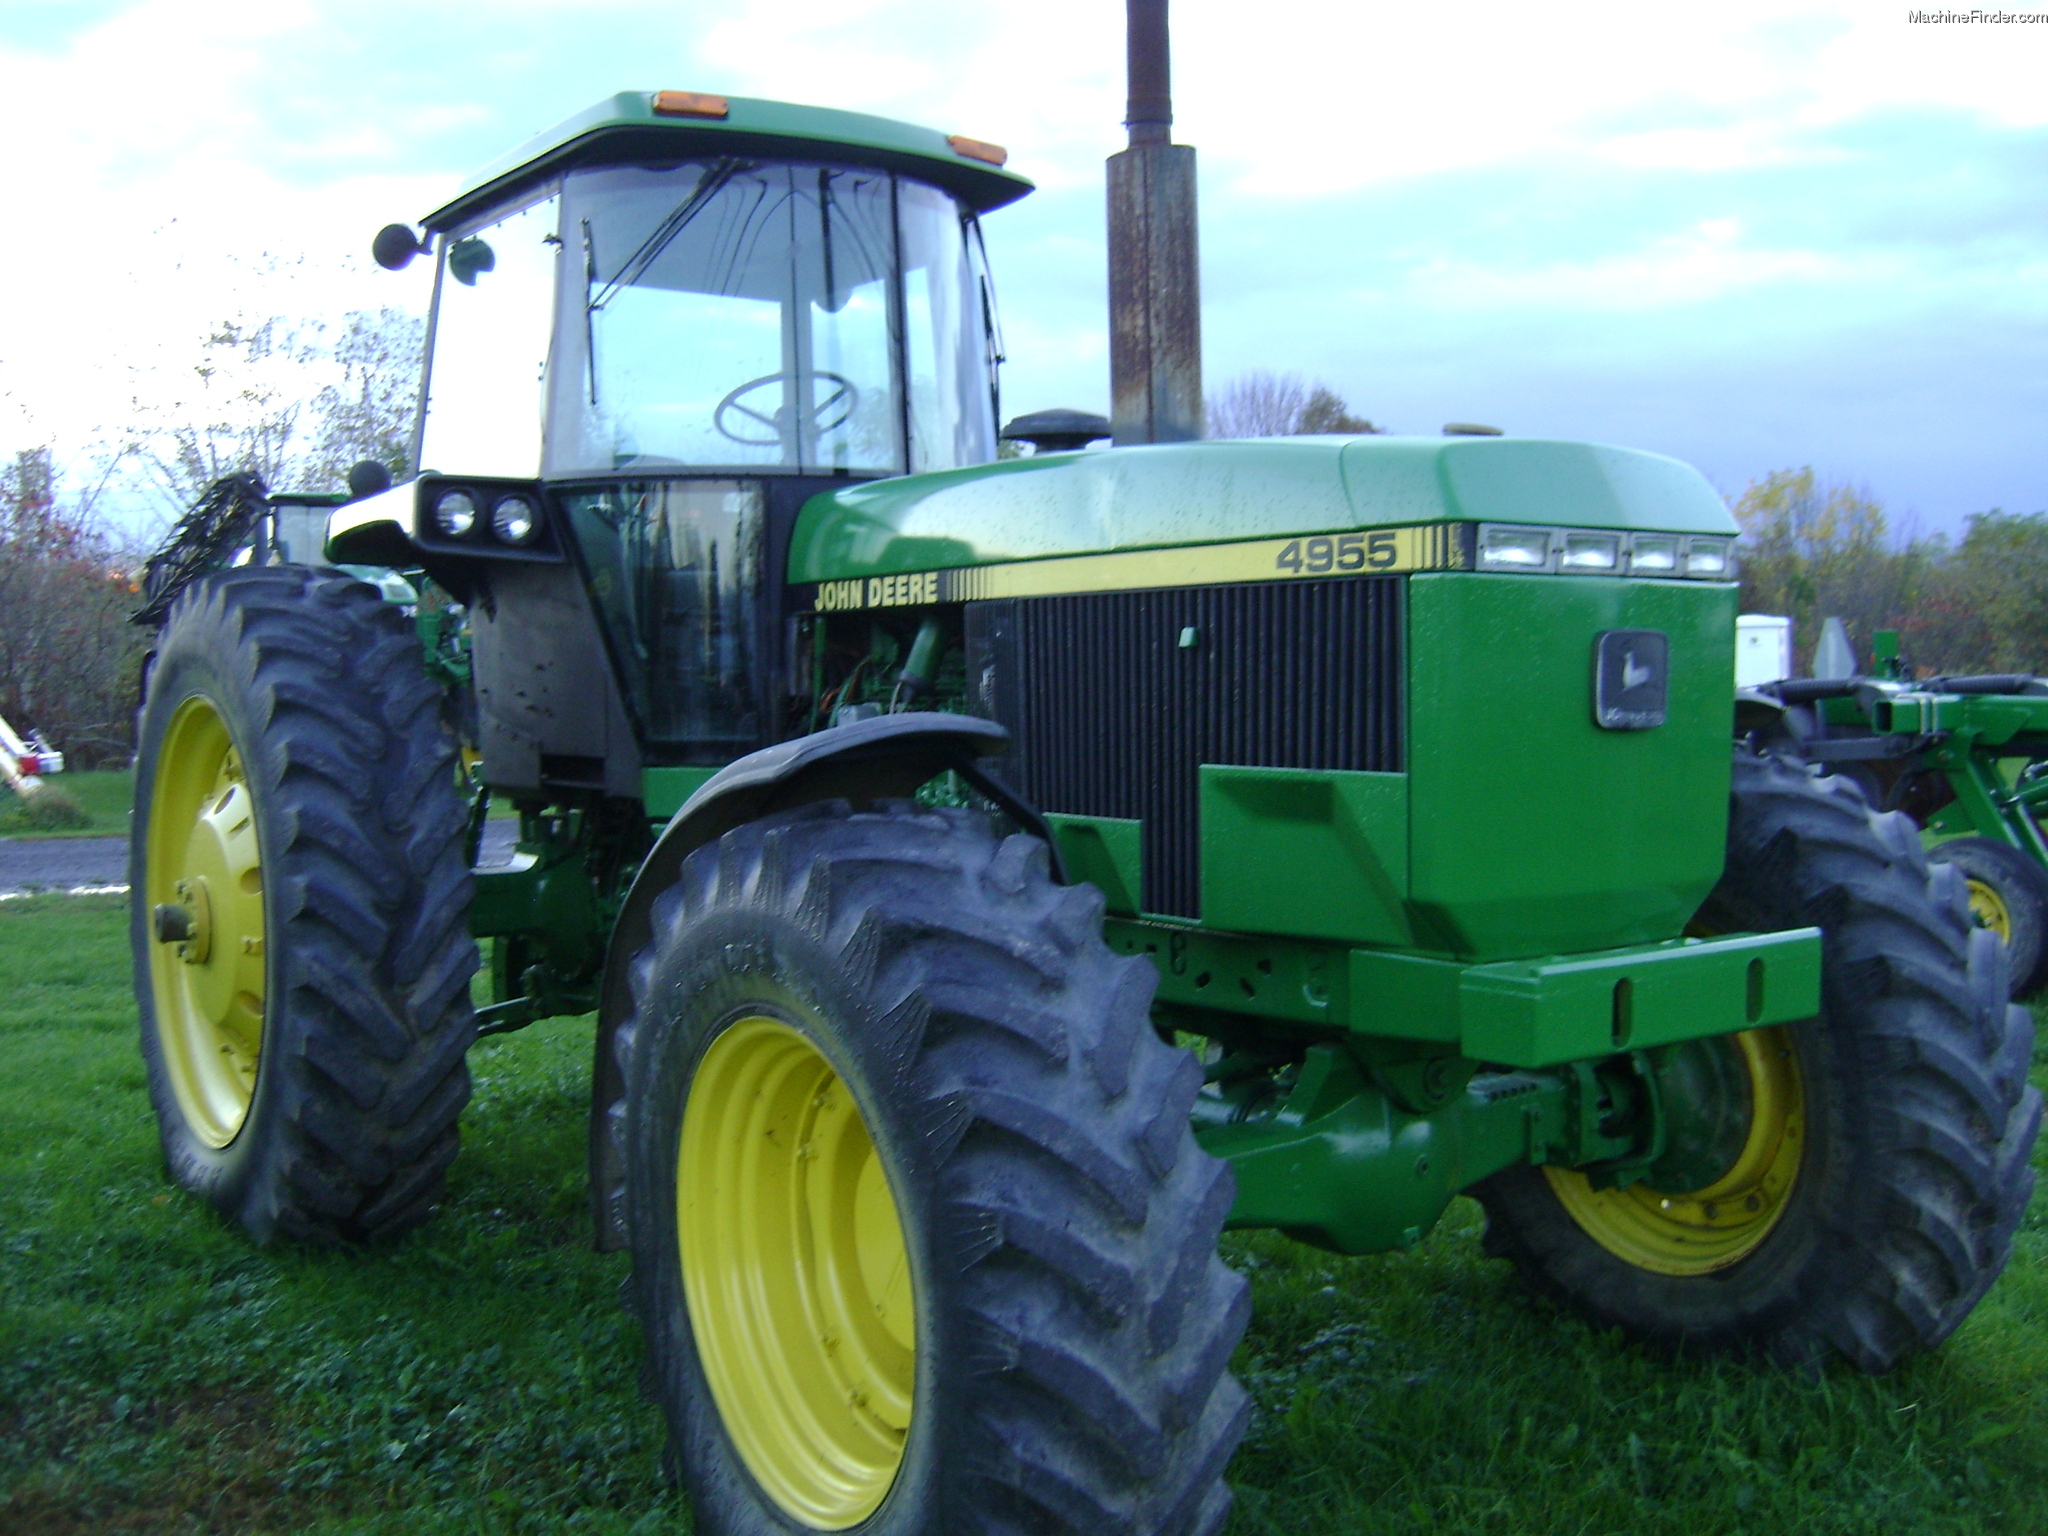 1990 John Deere 4955 Tractors Row Crop 100hp John Deere Machinefinder 3446